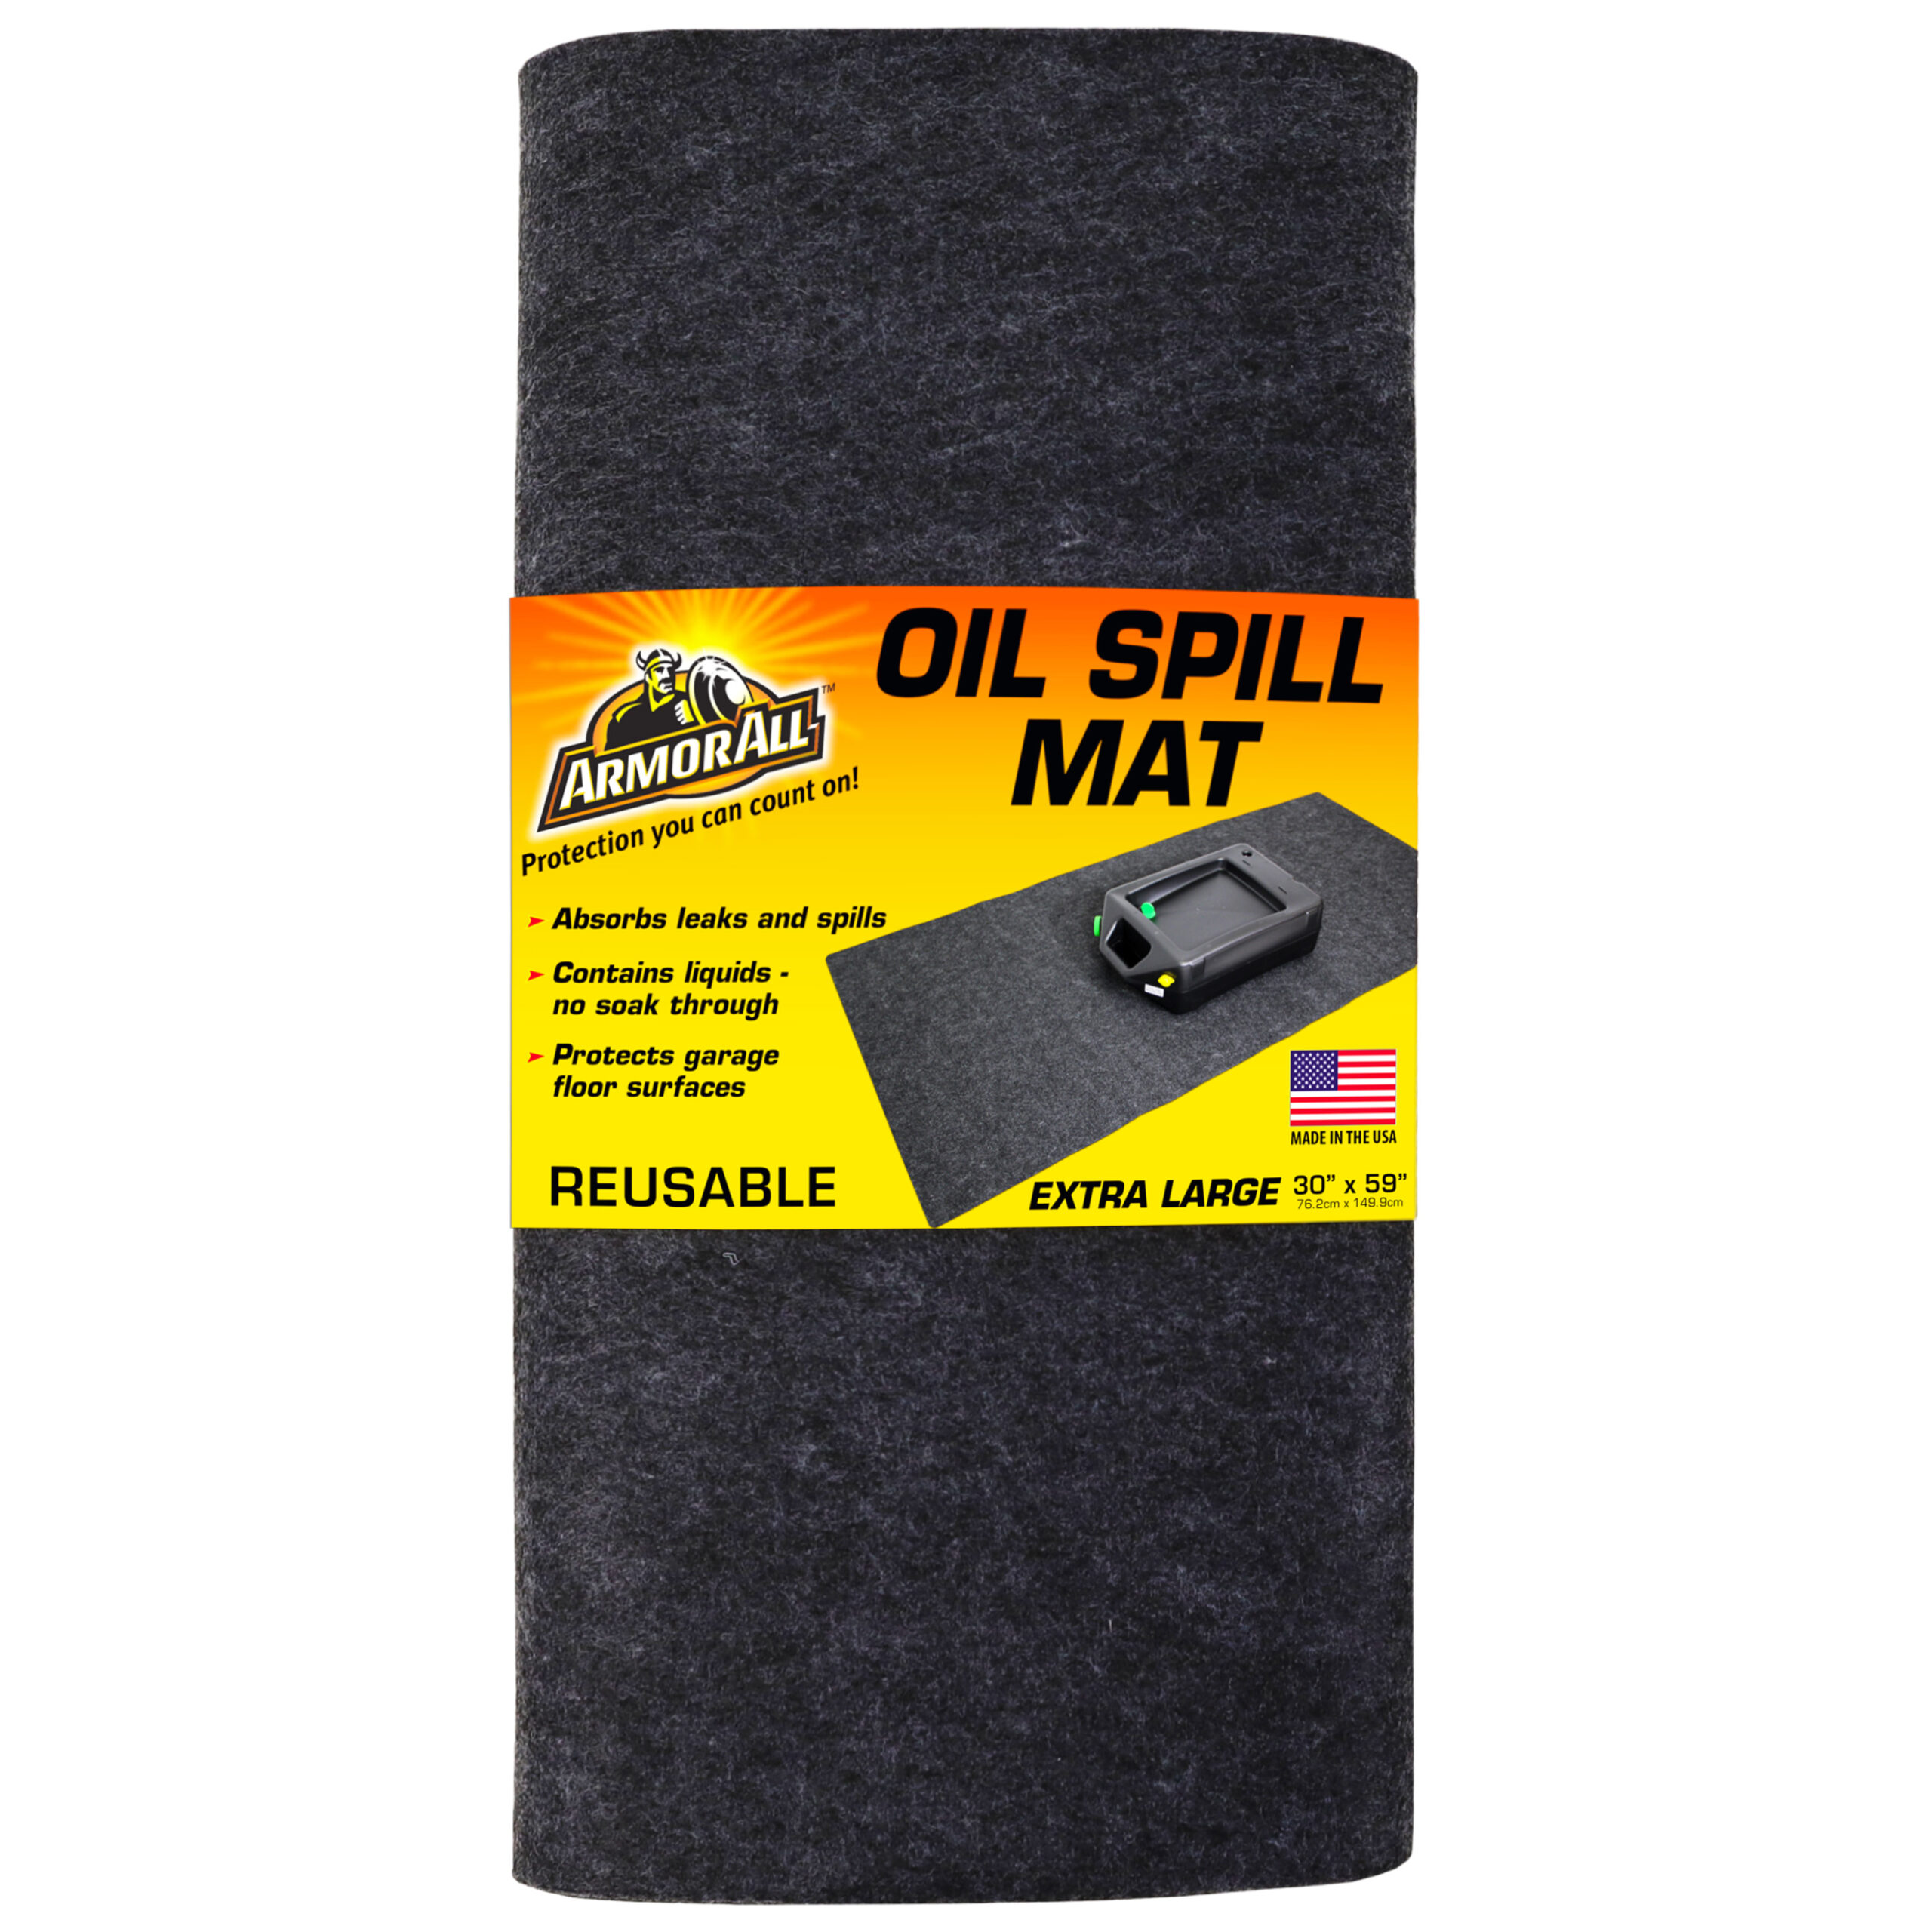 Oil Spill Mat Car Repair Mat Reusable Protects Garage Floor